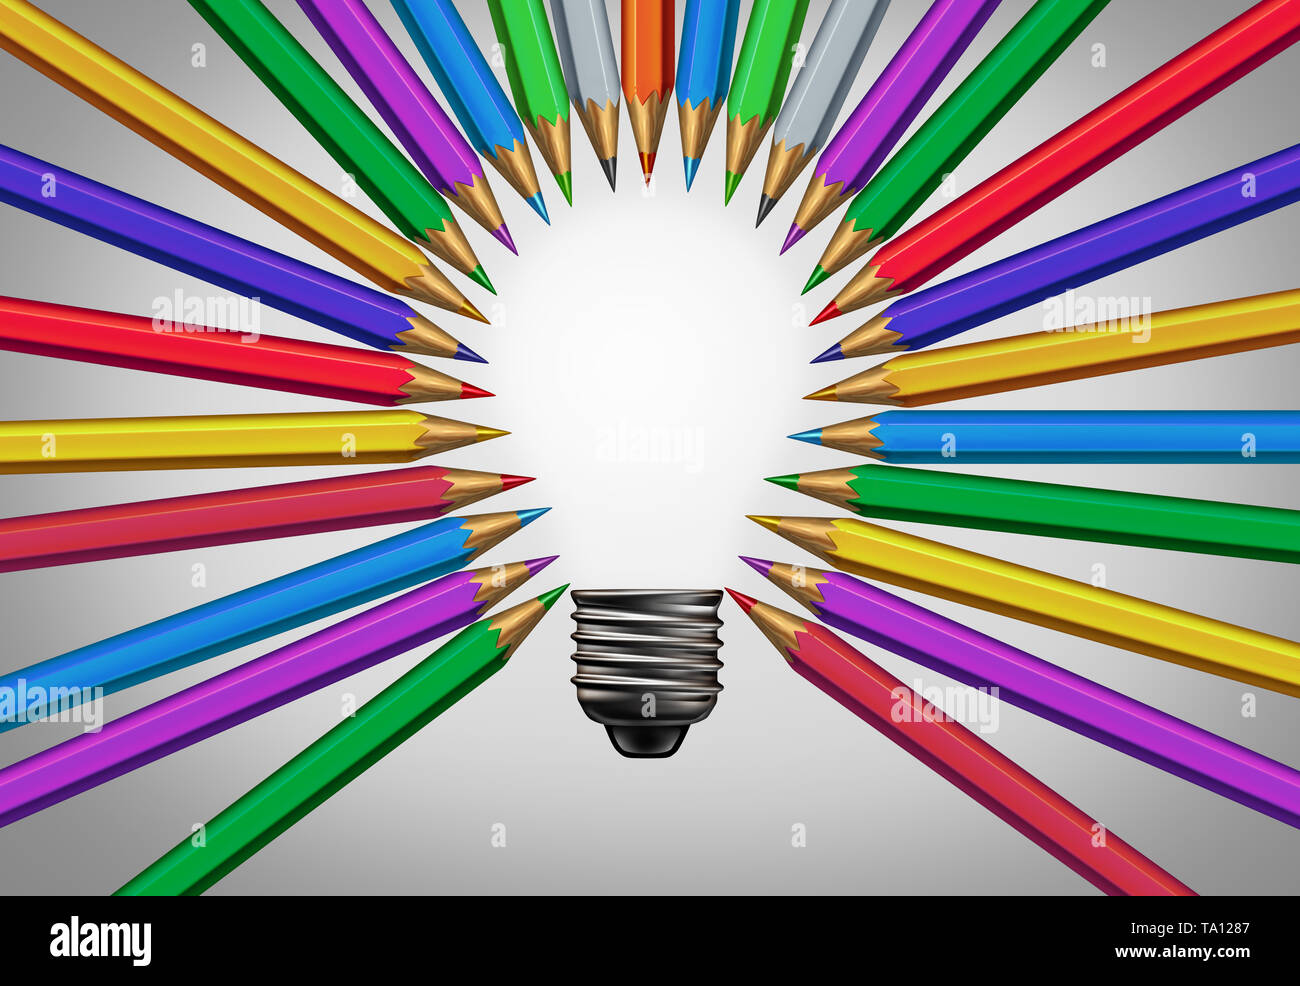 Kreative Inhalte Konzept zusammen denken, wie eine vielfältige Gruppe von Bleistifte zusammen kommen, sich in der Form eines inspirierenden Glühbirne. Stockfoto